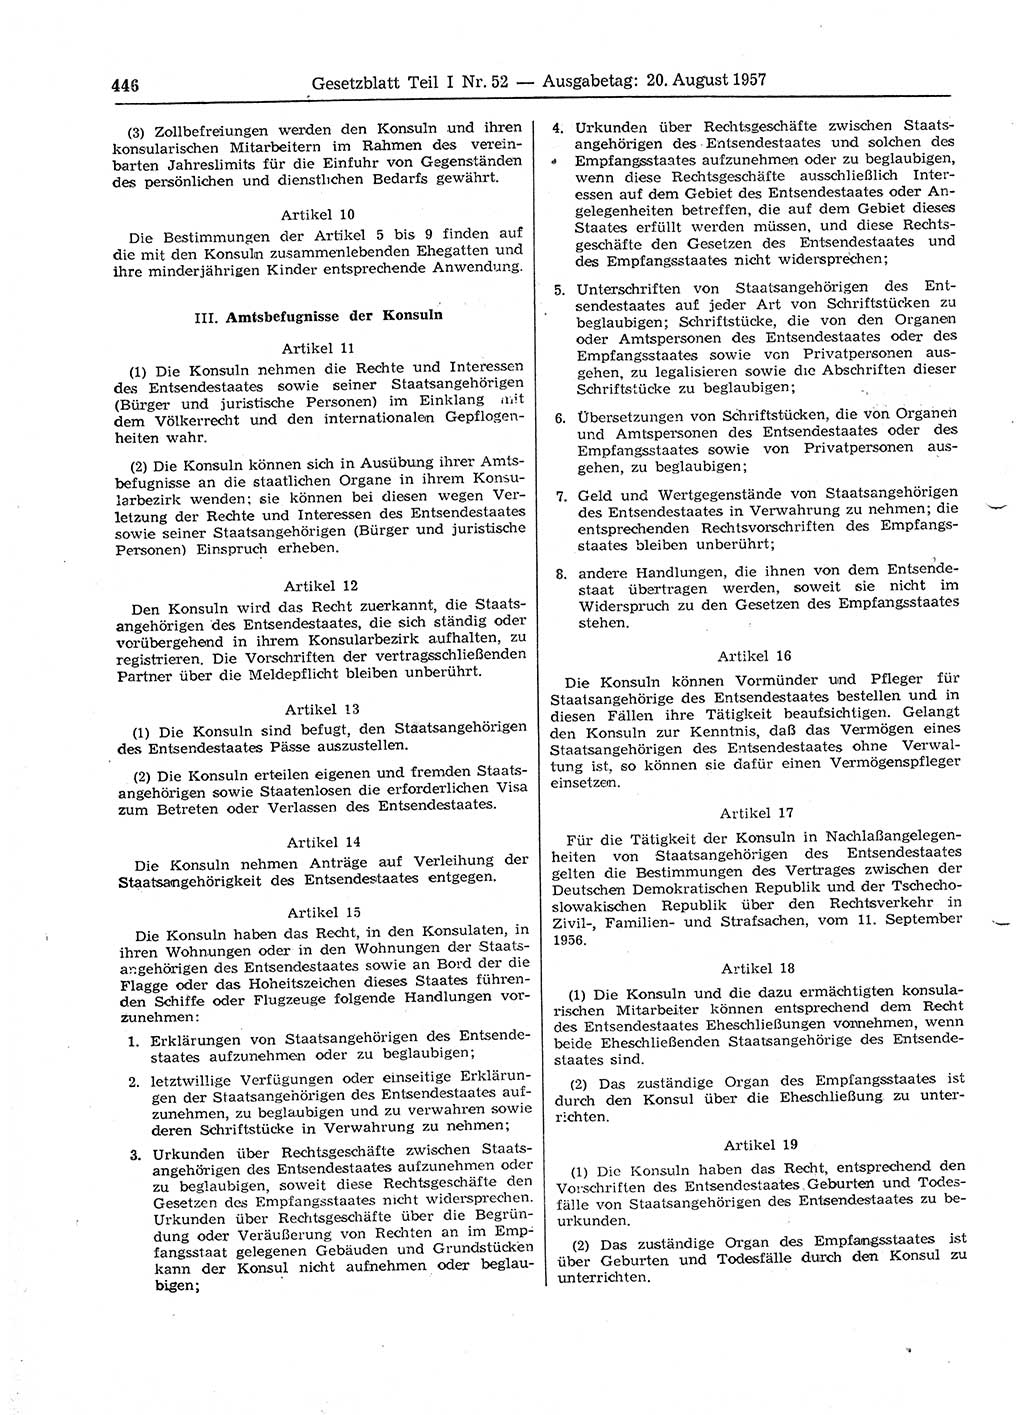 Gesetzblatt (GBl.) der Deutschen Demokratischen Republik (DDR) Teil Ⅰ 1957, Seite 446 (GBl. DDR Ⅰ 1957, S. 446)